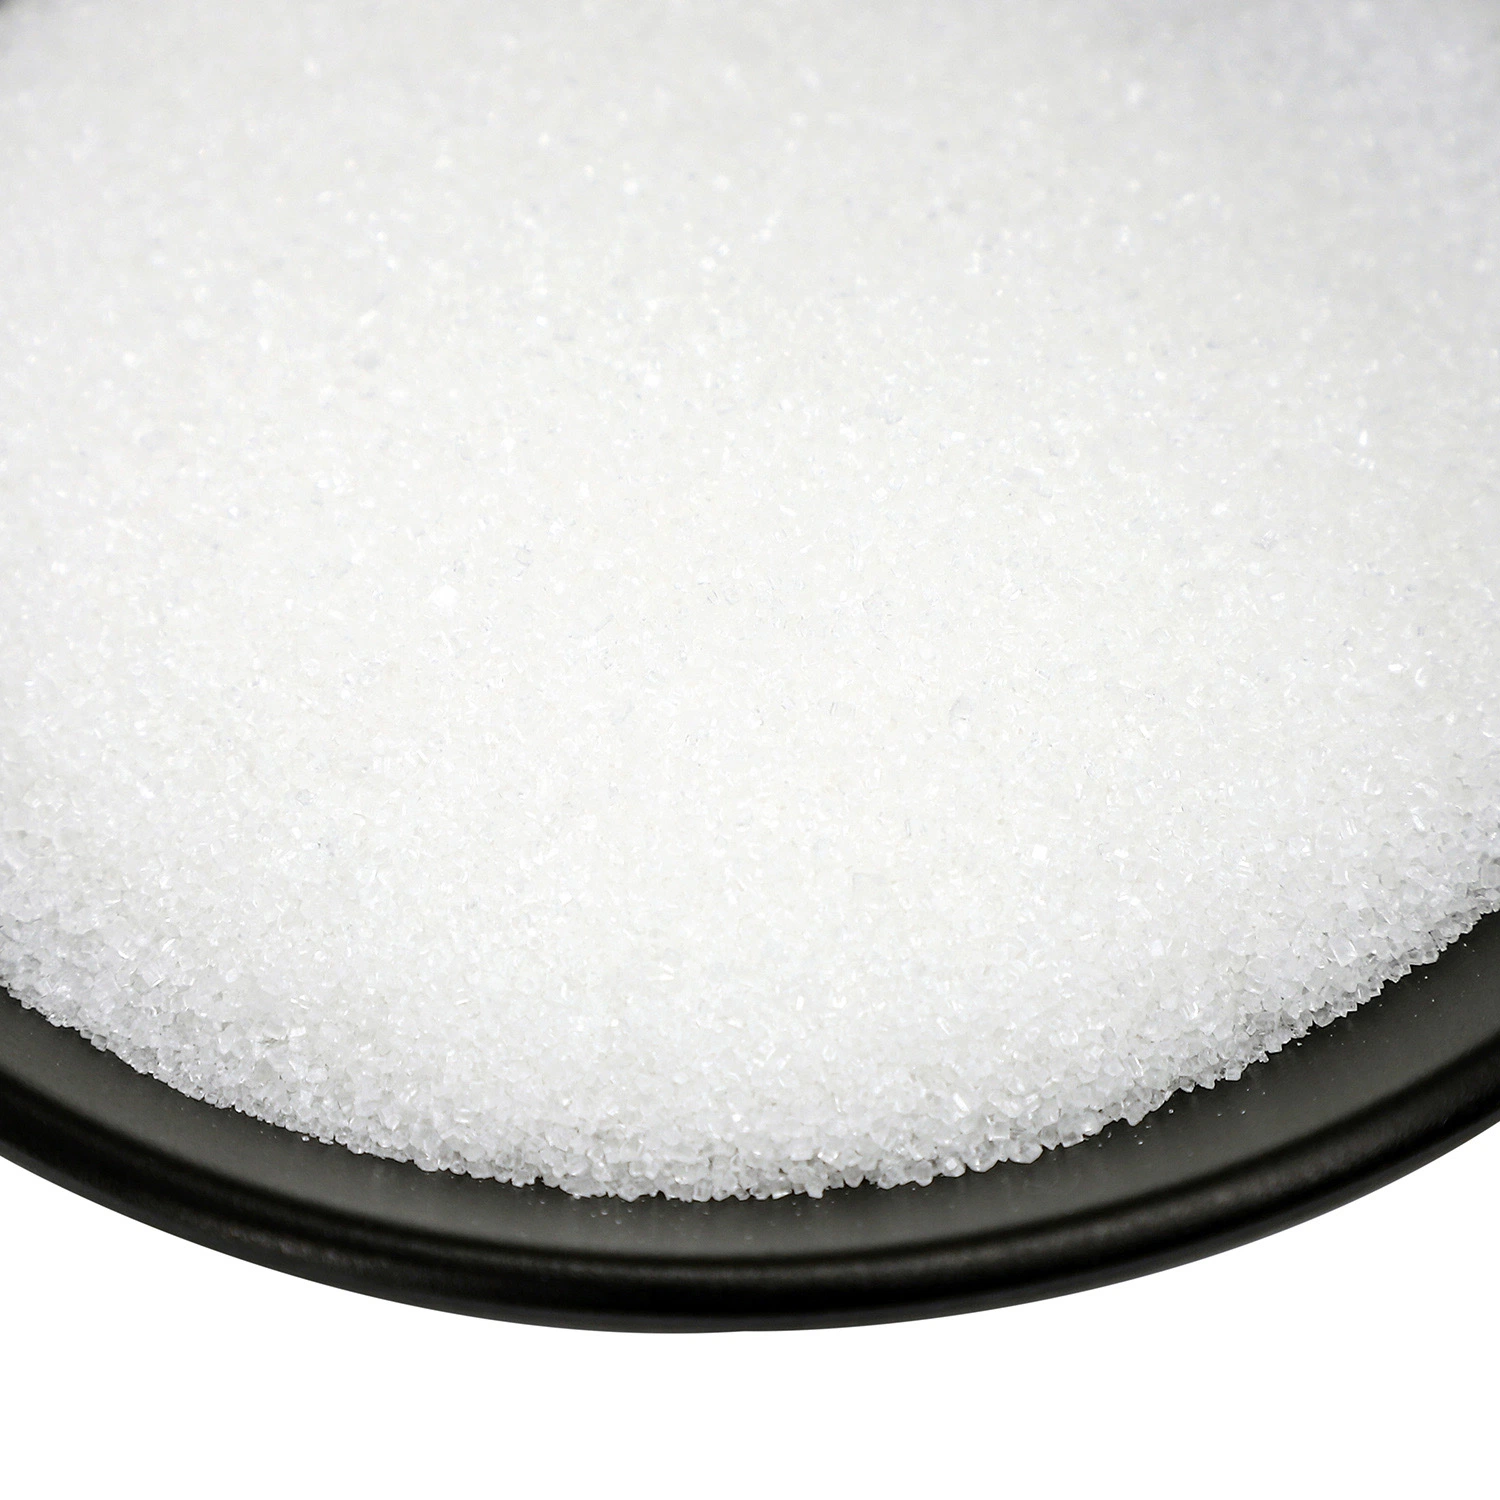 Carbonate de lithium de qualité industrielle de haute pureté avec meilleur prix cas: 554-13-2